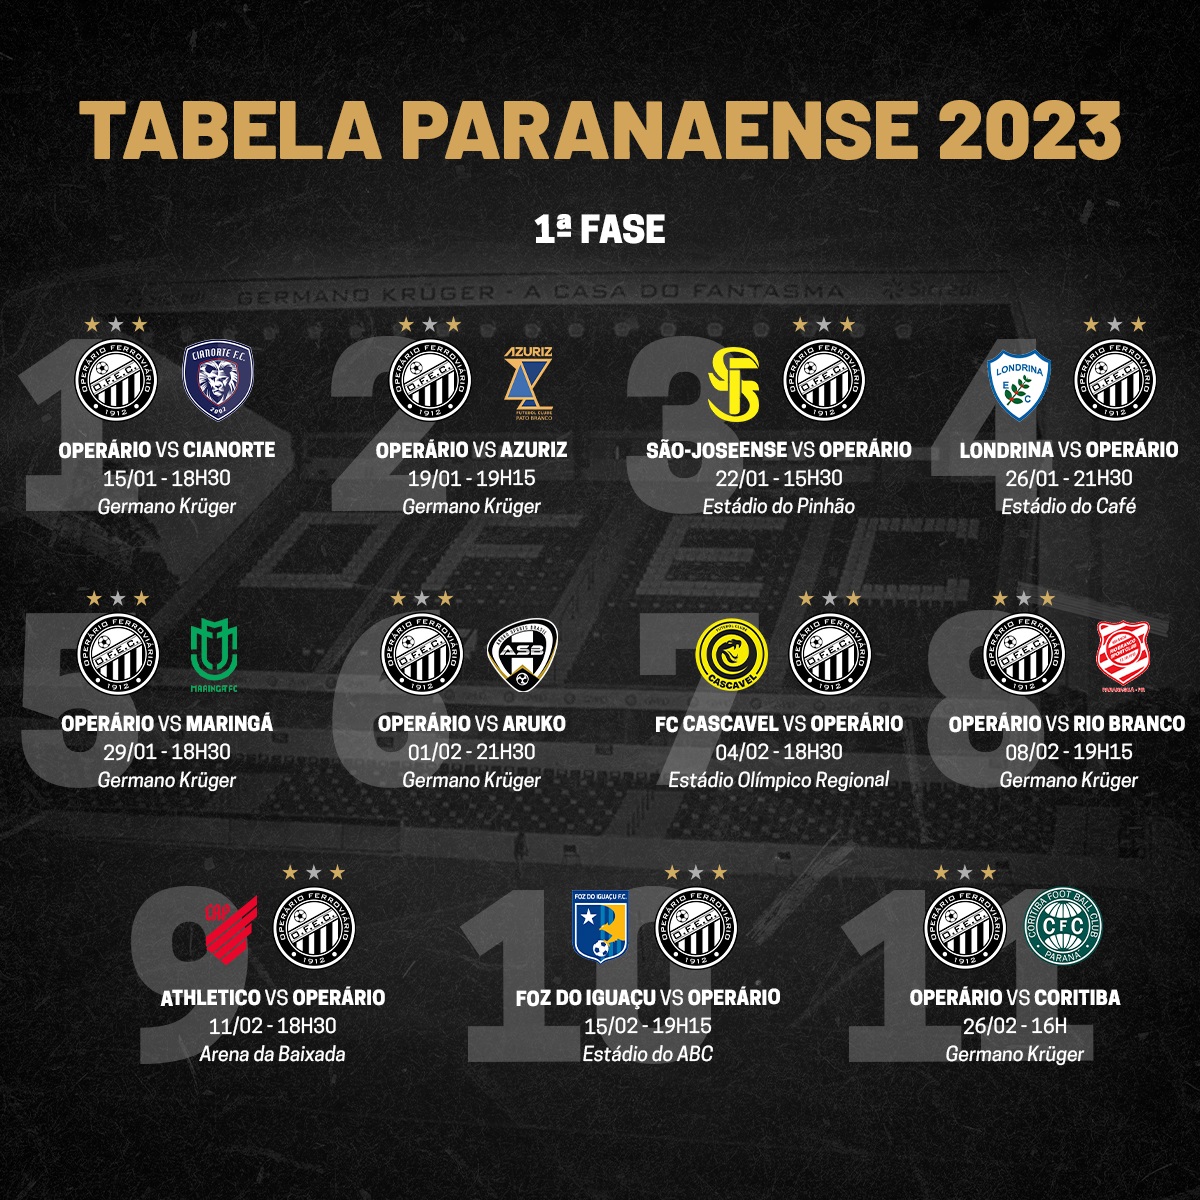 Paranaense 2023: Federação divulga tabela com datas, horários e locais